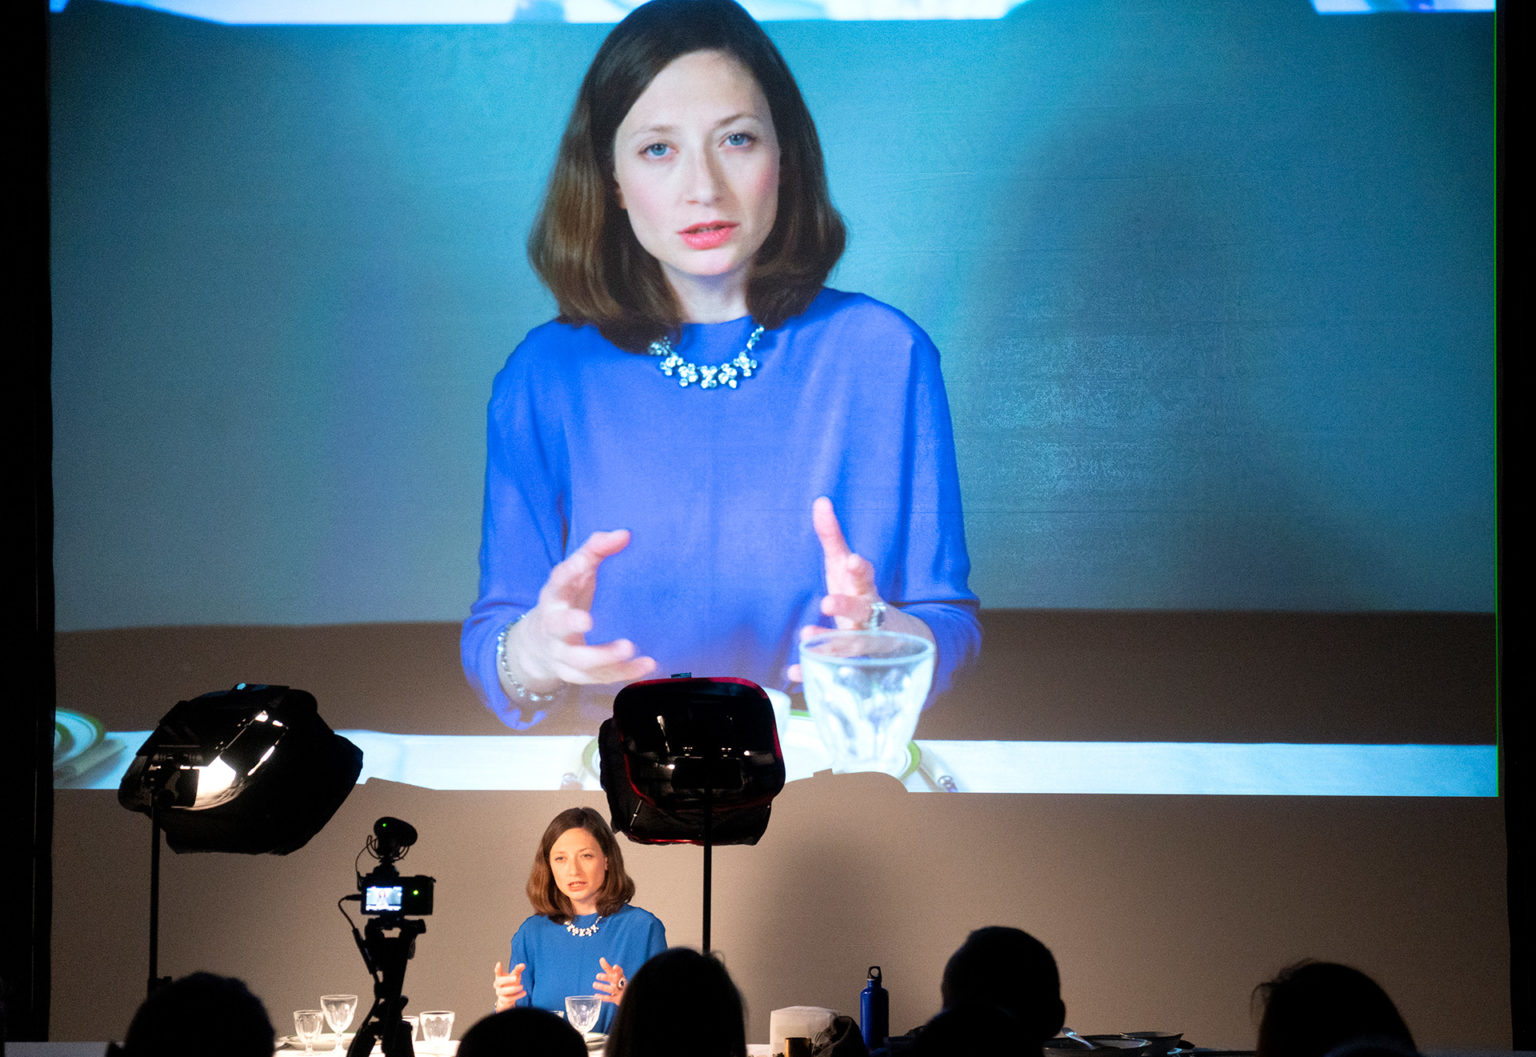 Ariane Loze en pleine performance, devant une grande table. Son image est projetée sur un écran géant. Elle porte un haut bleu.